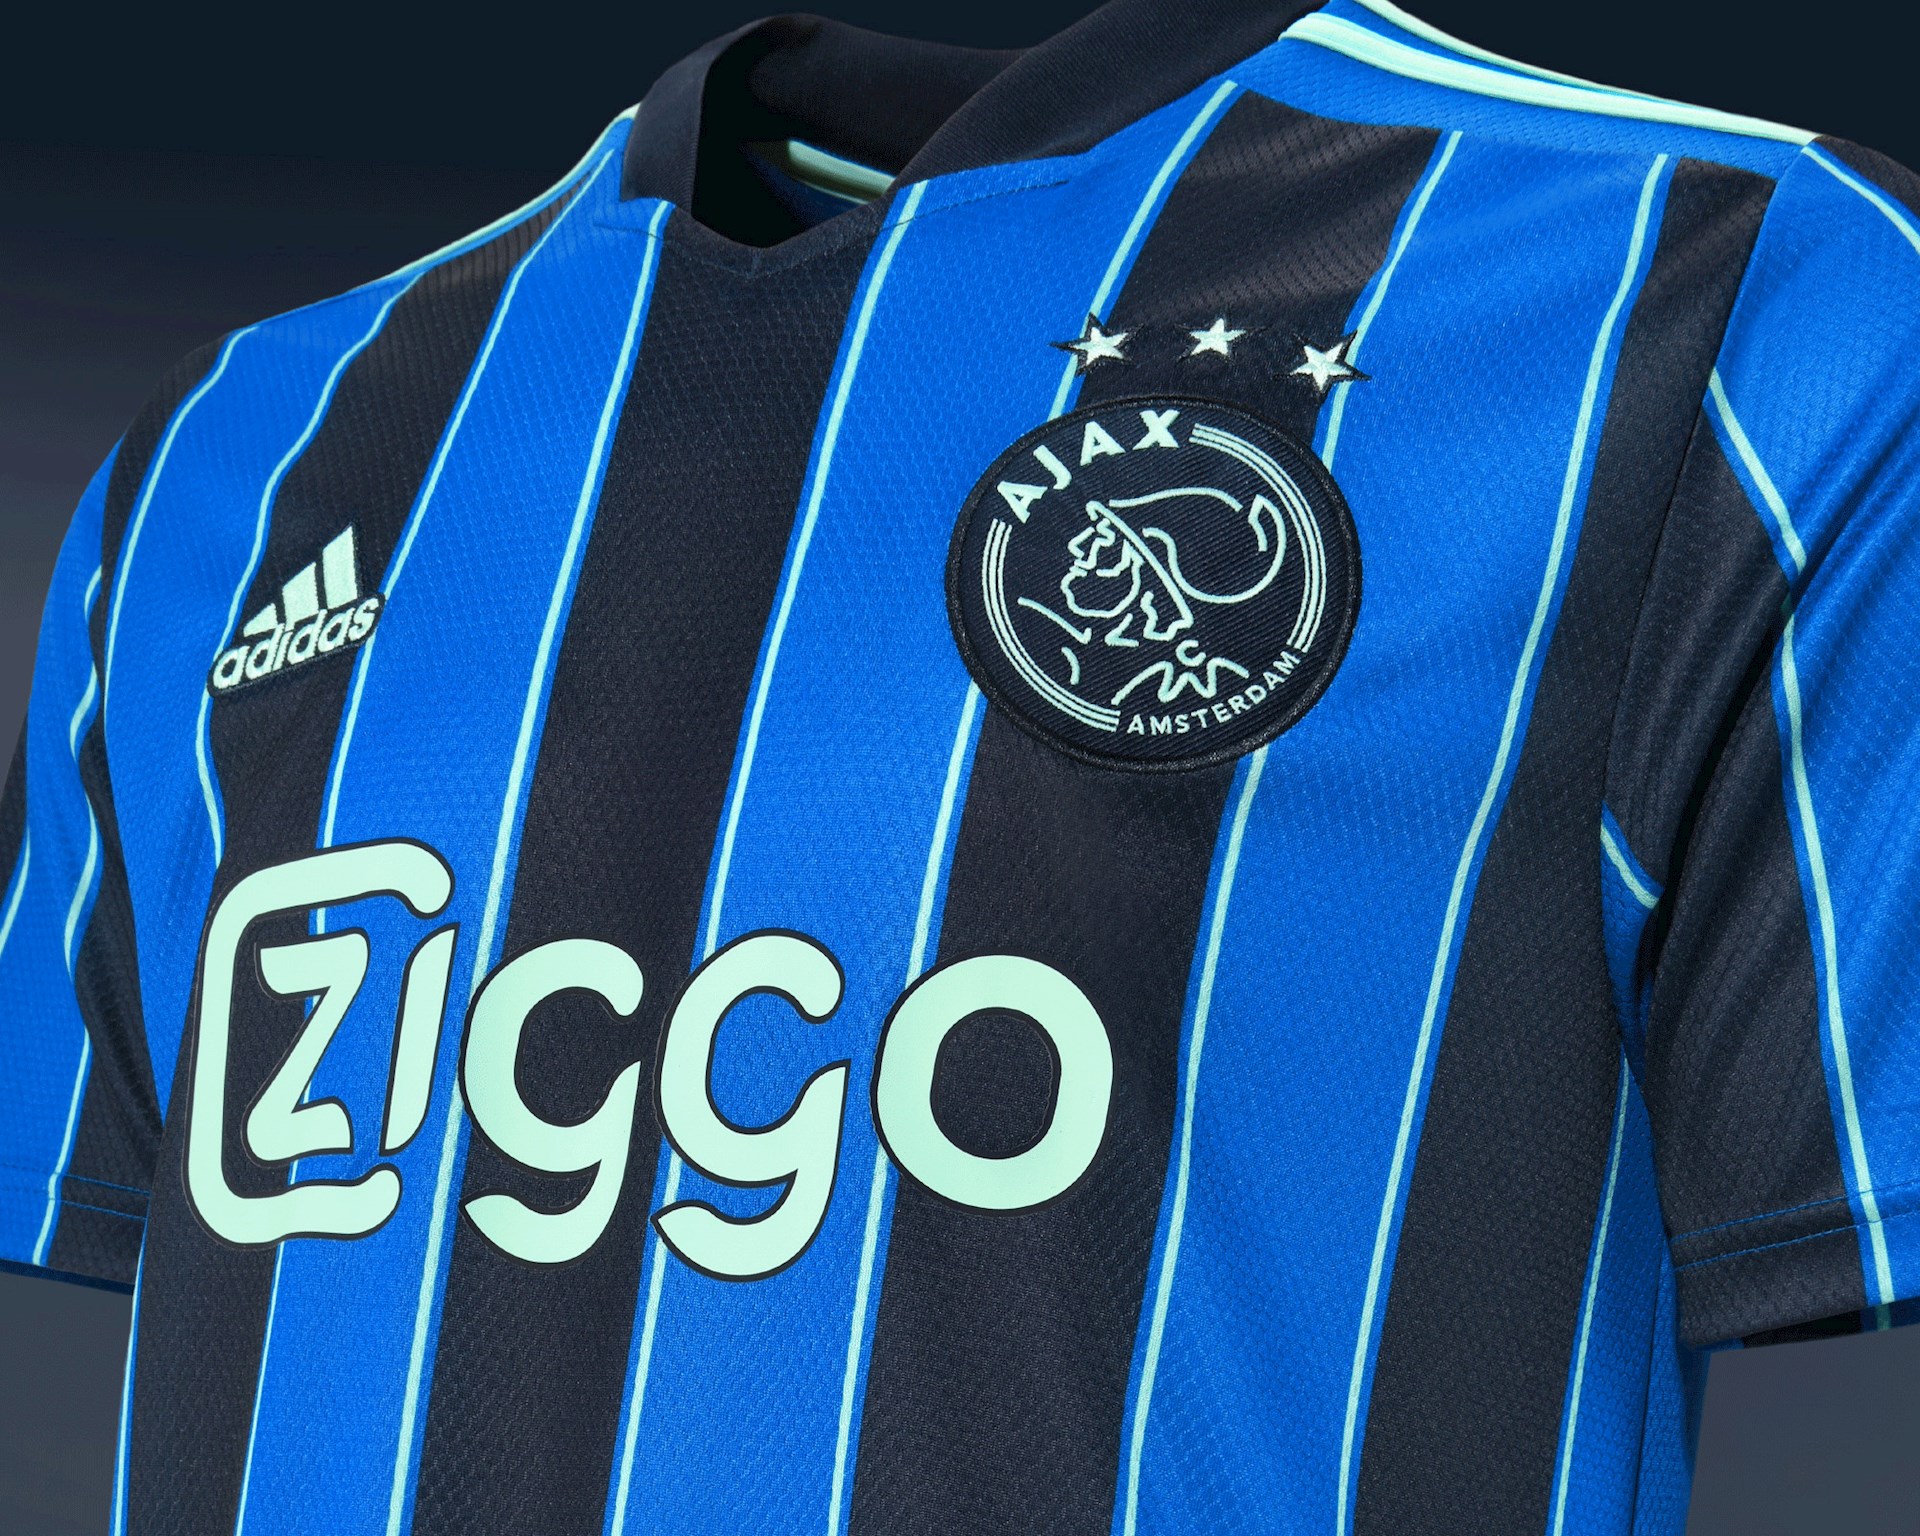 Aankoop Ambitieus Verwacht het Ajax uitshirt 2021-2022 - Voetbalshirts.com